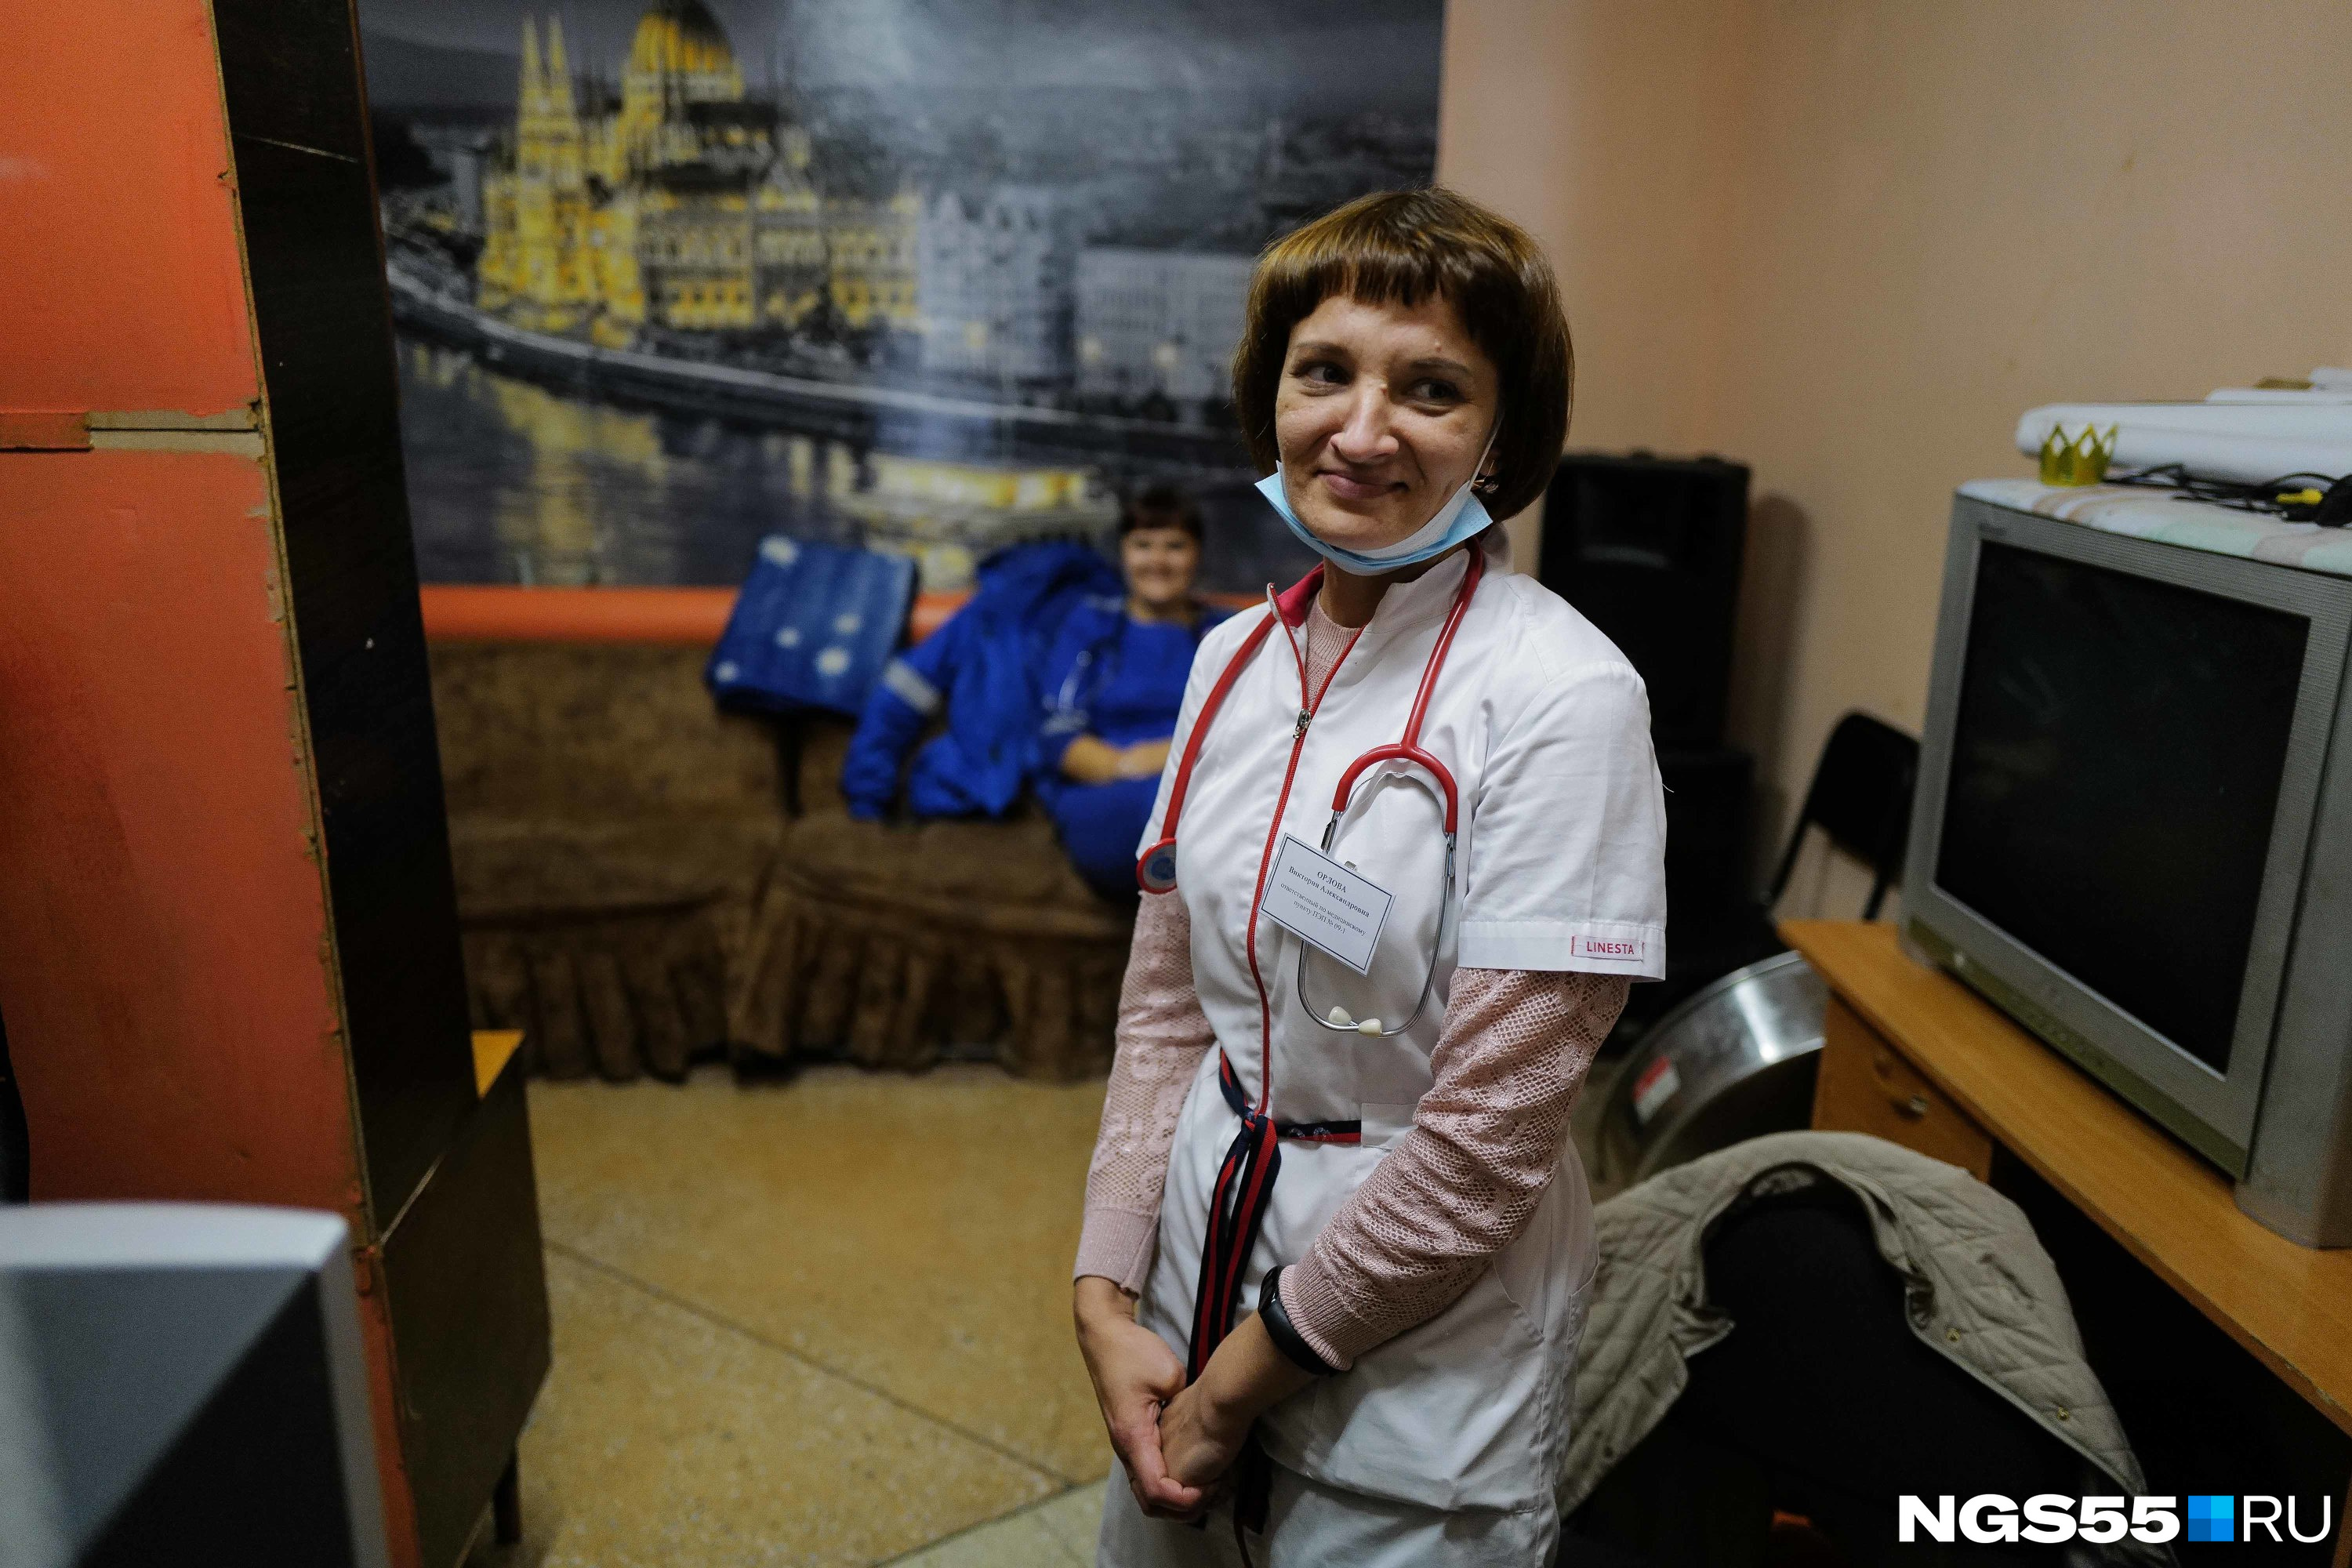 Вот такая очаровательная медик будет ждать тех, кто эвакуируется в Марьяновку